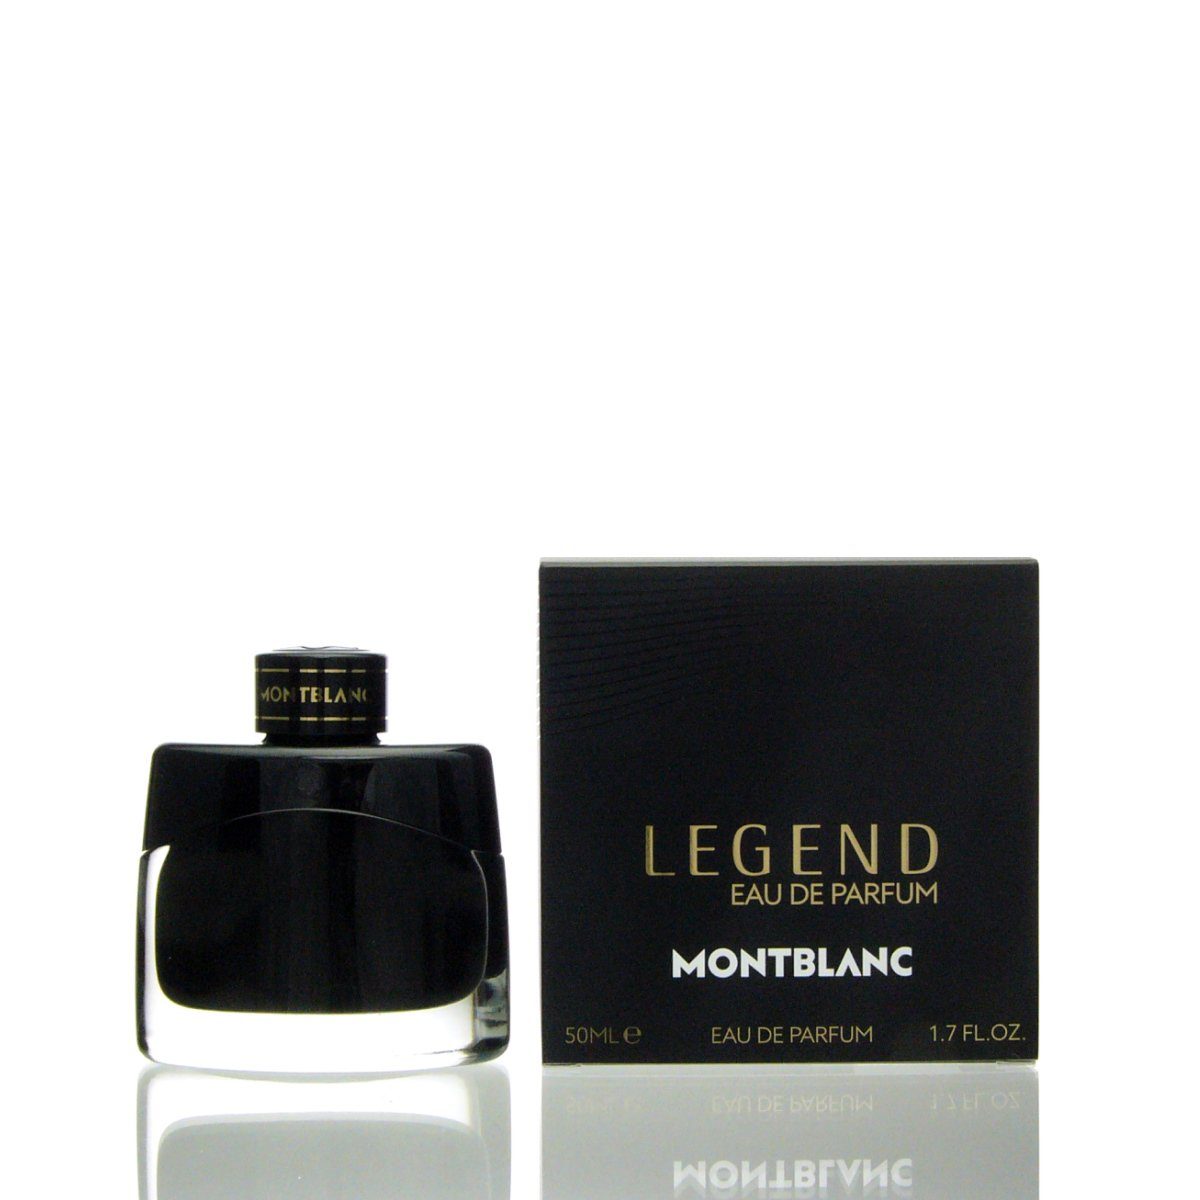 MONTBLANC Eau de Parfum Montblanc Legend Eau de Parfum 50 ml